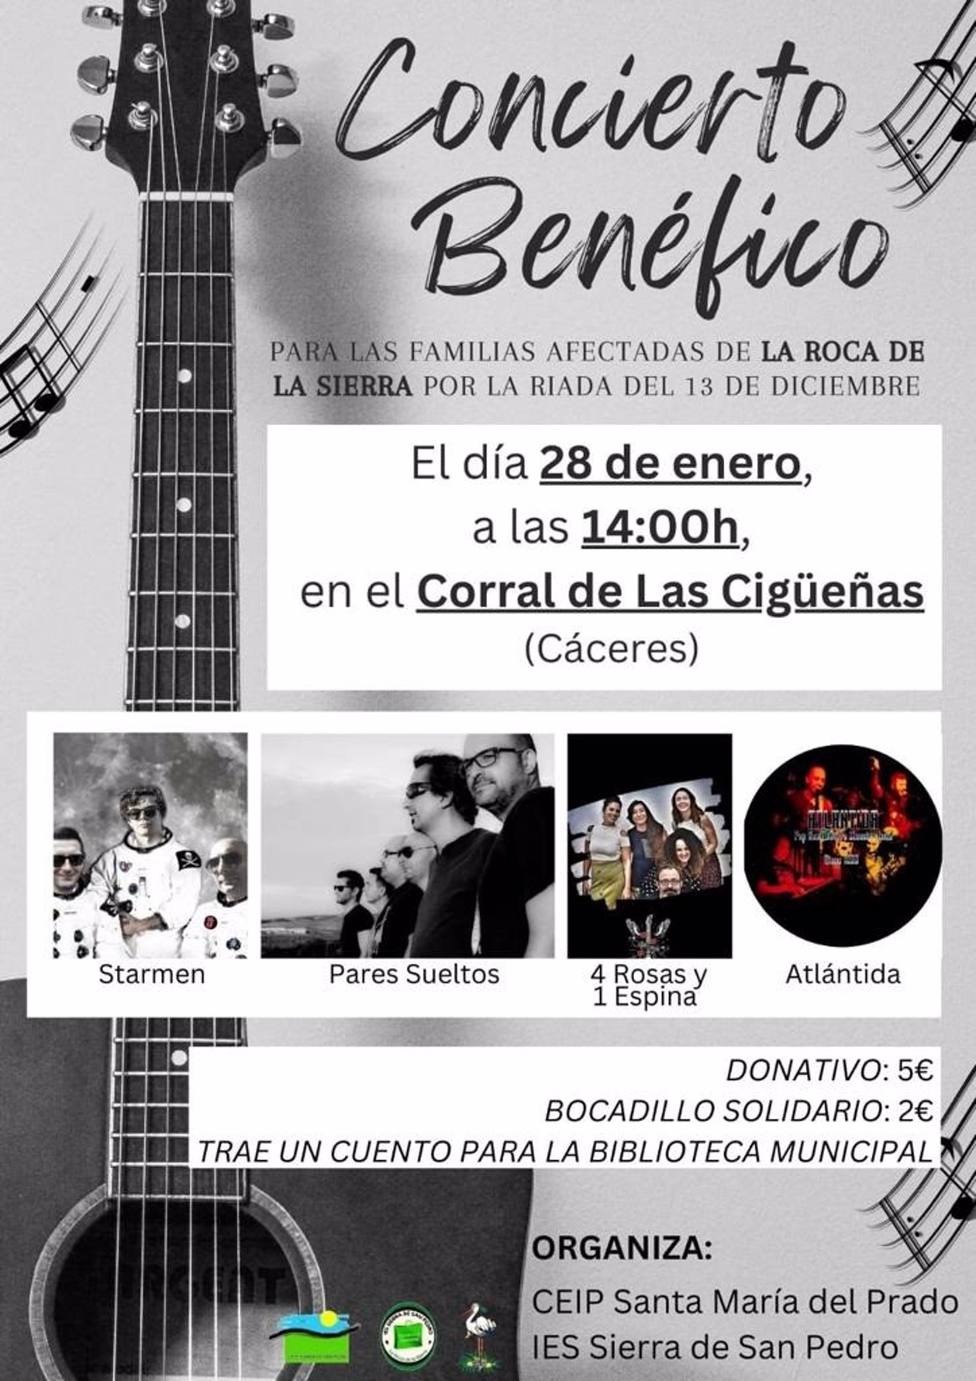 Organizan un concierto benÃ©fico en CÃ¡ceres a favor de las familias afectadas por la riada en La Roca de la Sierra